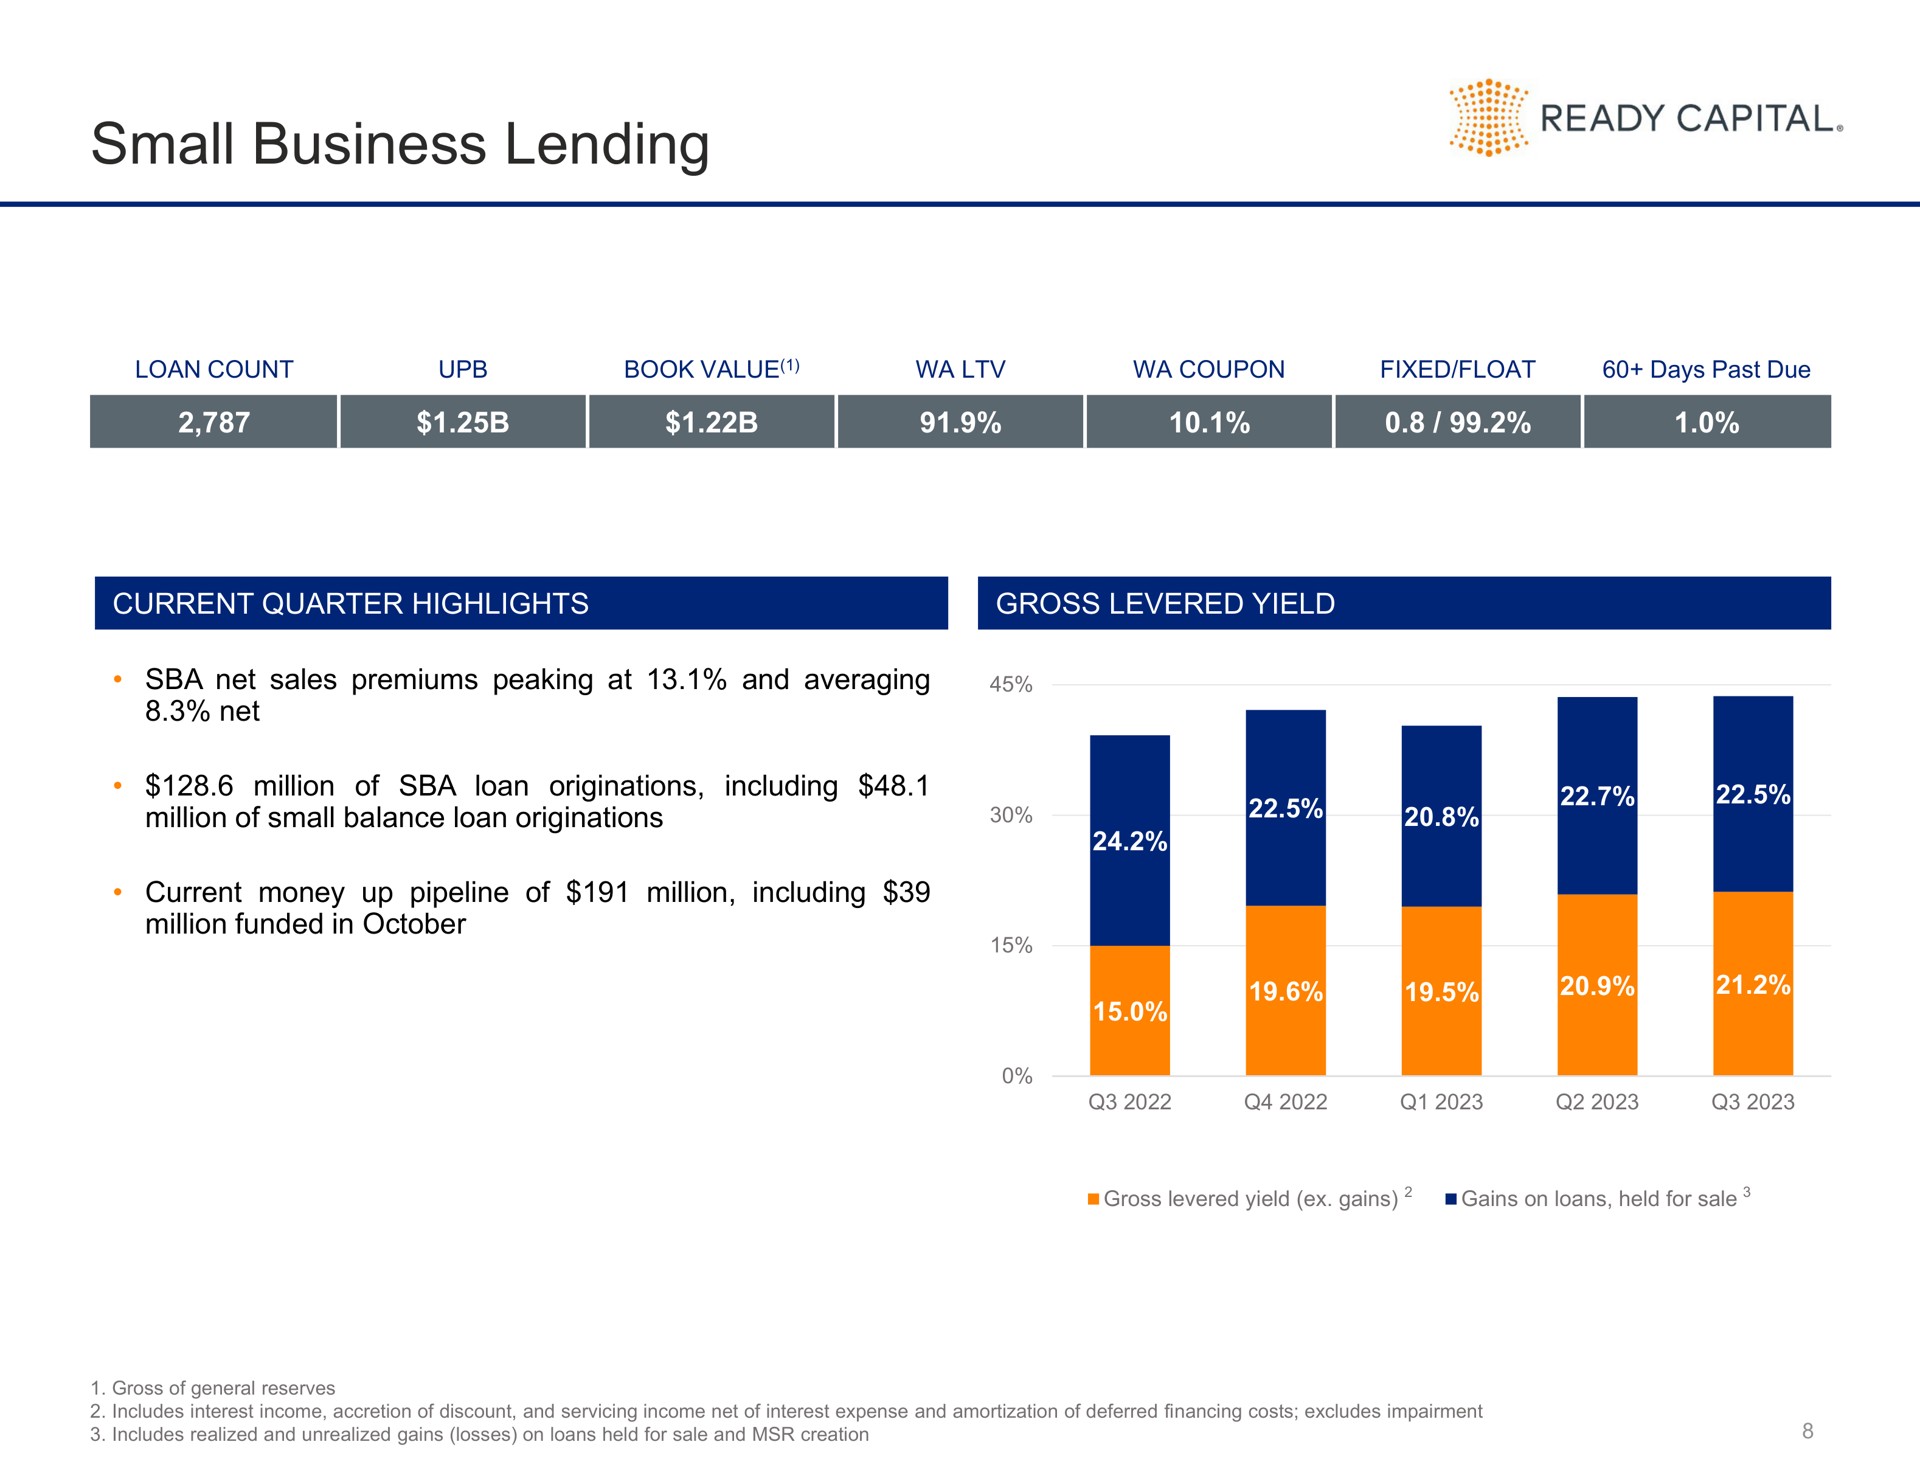 small business lending ready capital as | Ready Capital